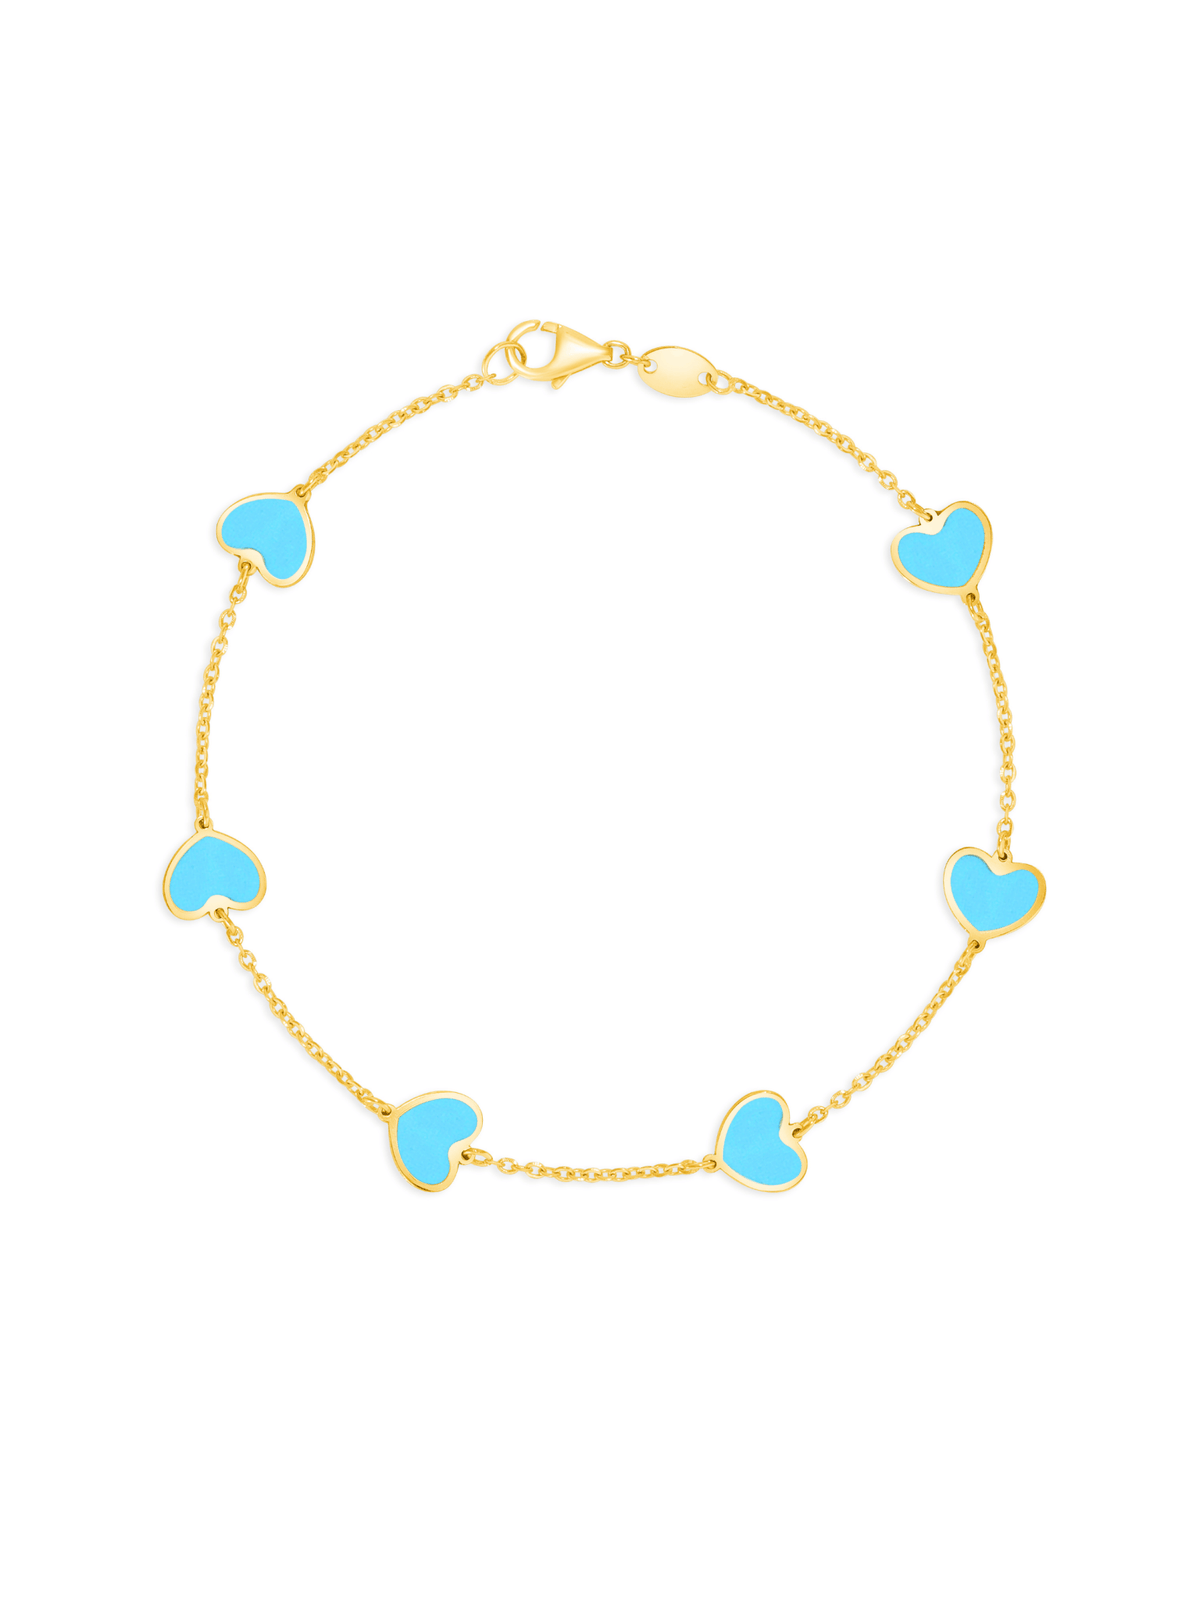 Endless Heart Turquoise Bracelet 14K - LeMel